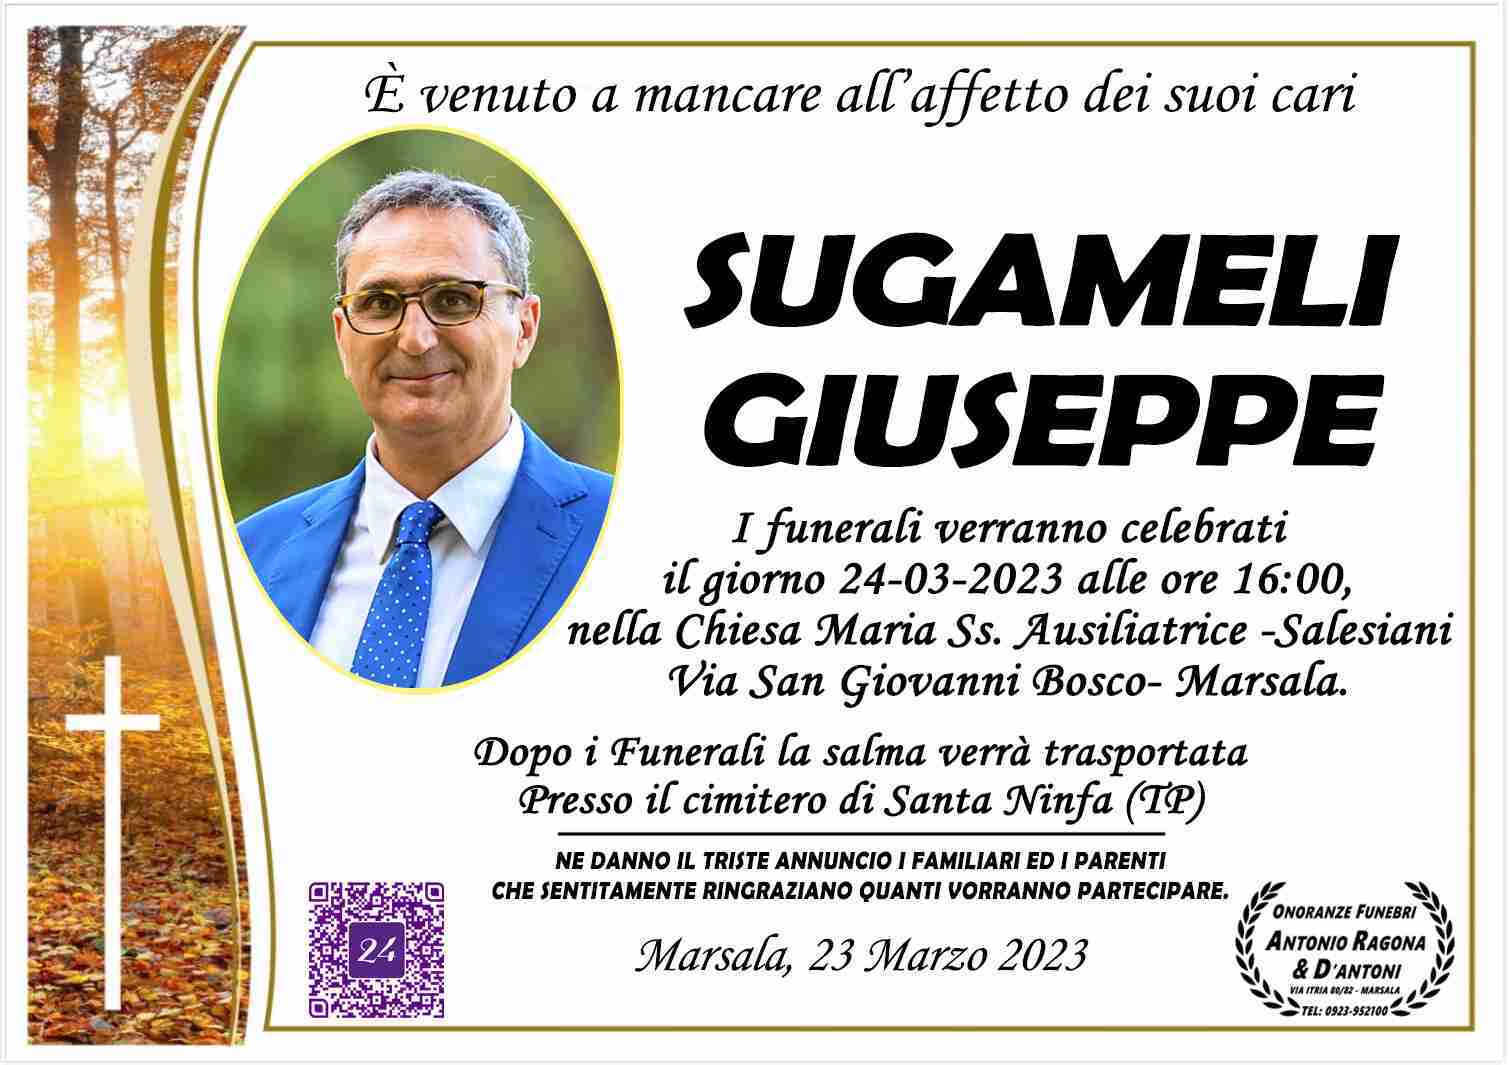 Giuseppe Sugameli